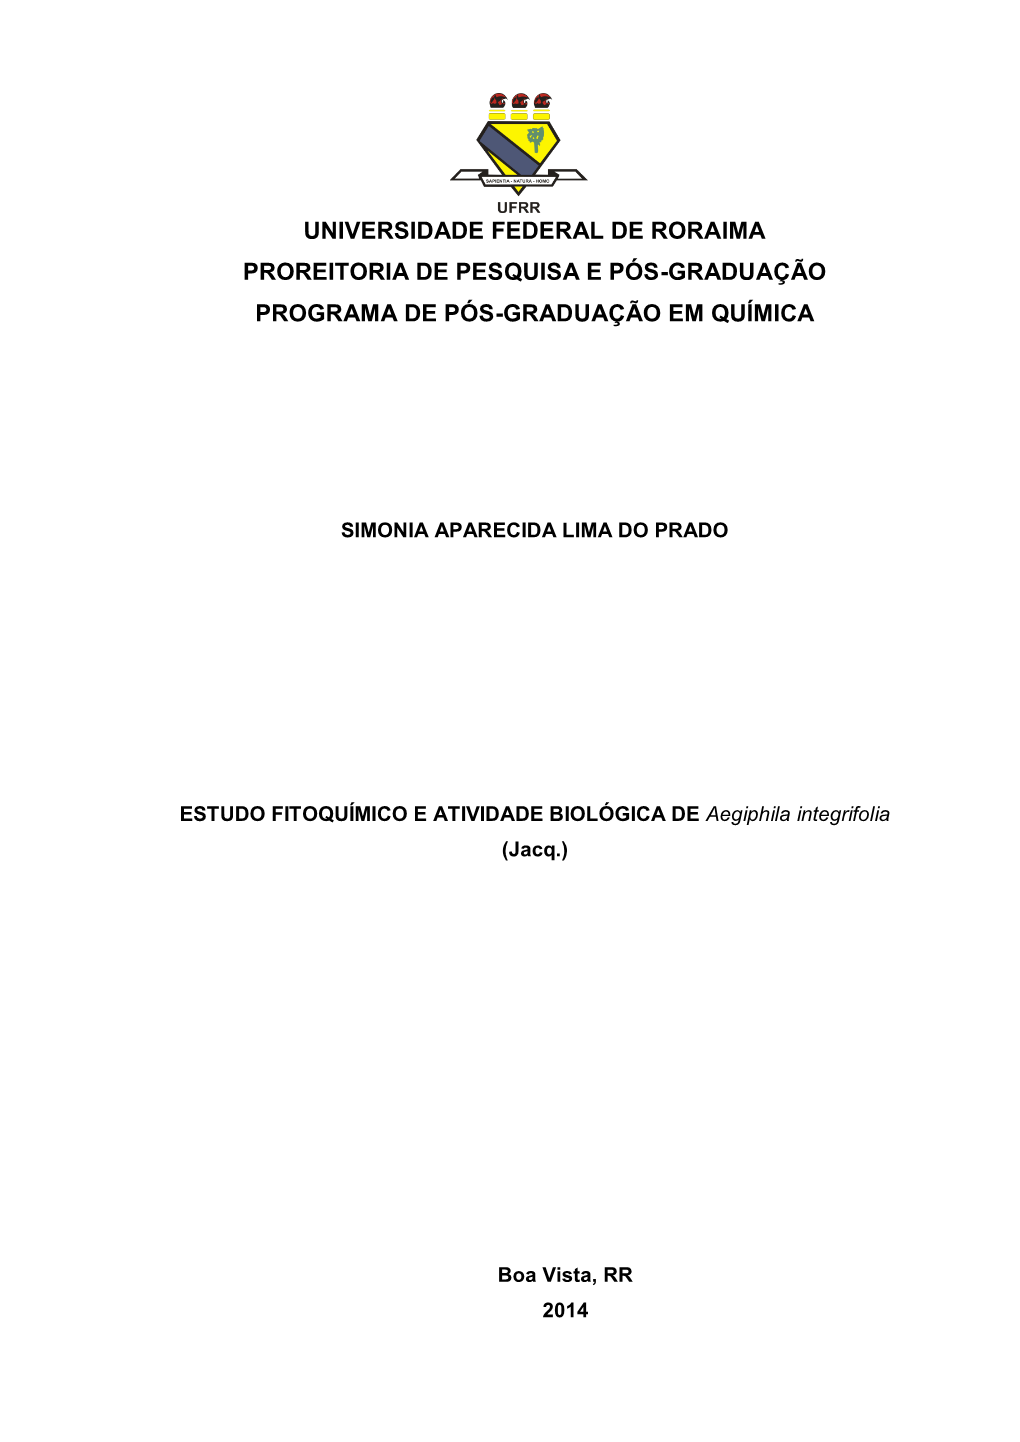 ESTUDO FITOQUÍMICO E ATIVIDADE BIOLÓGICA DE Aegiphila Integrifolia (Jacq.)